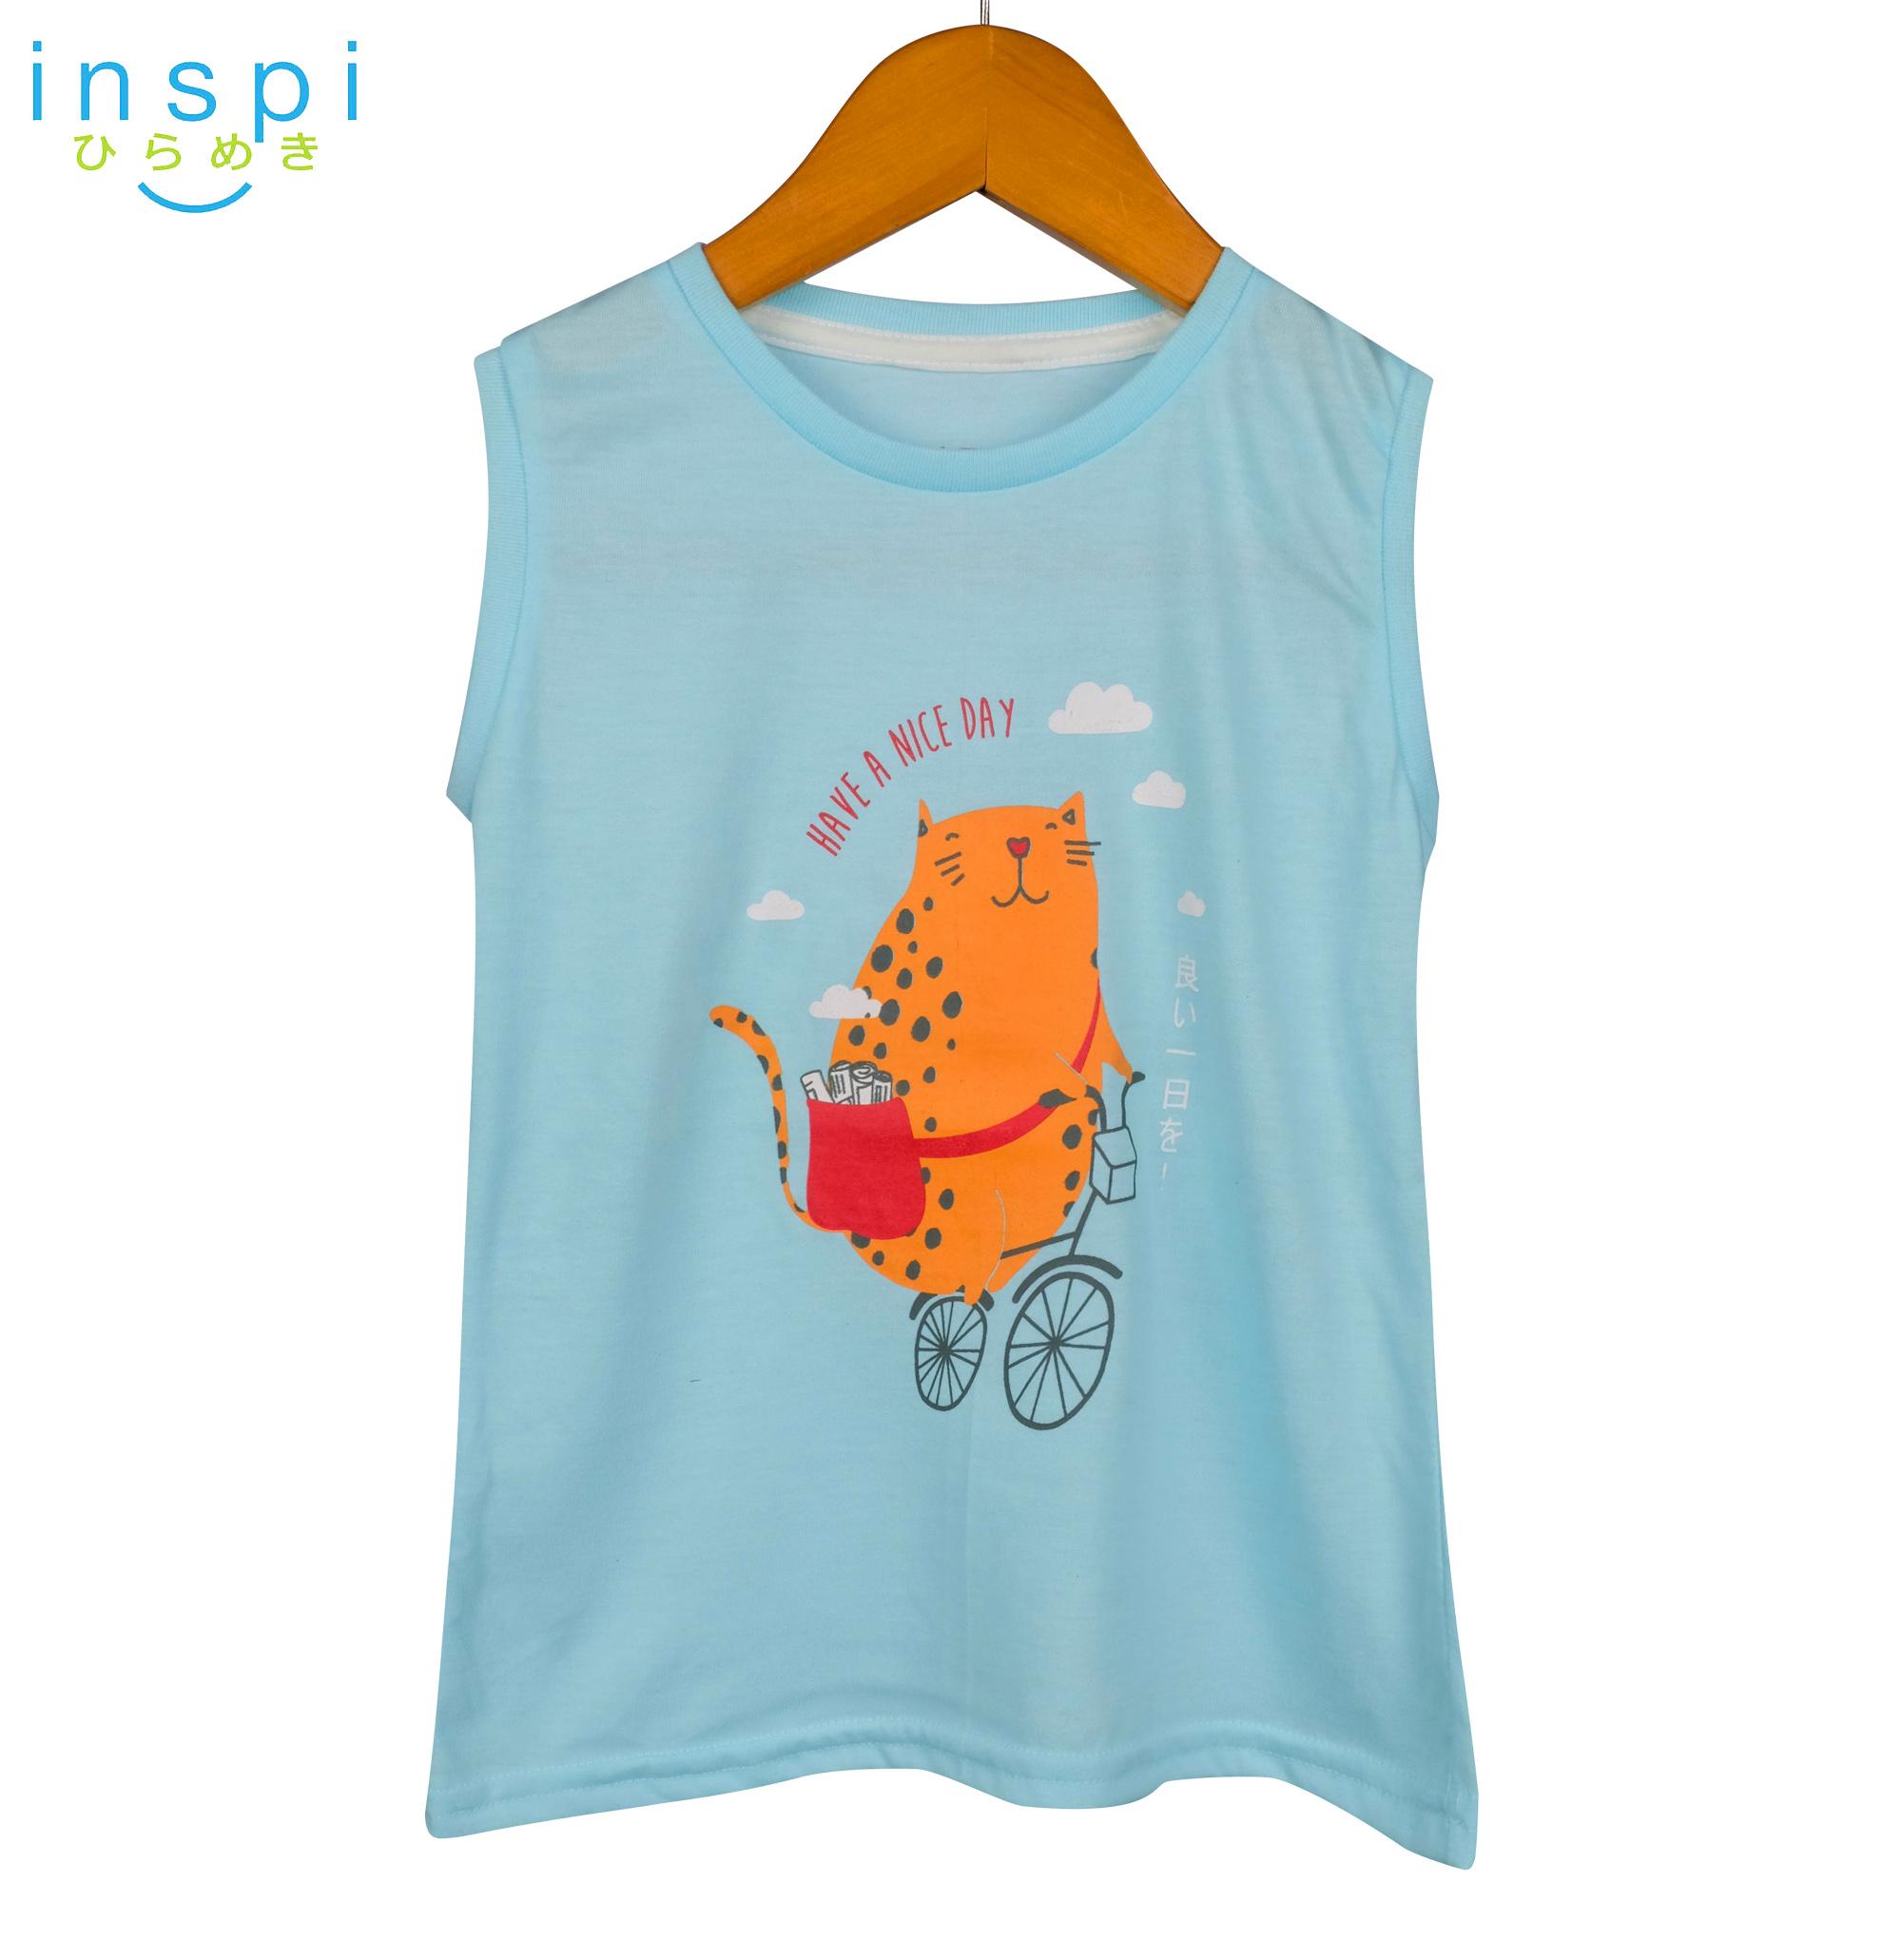 INSPI Kids Girls Newspaper Cat (Blue) Sando Top shirt top tee t shirt ...